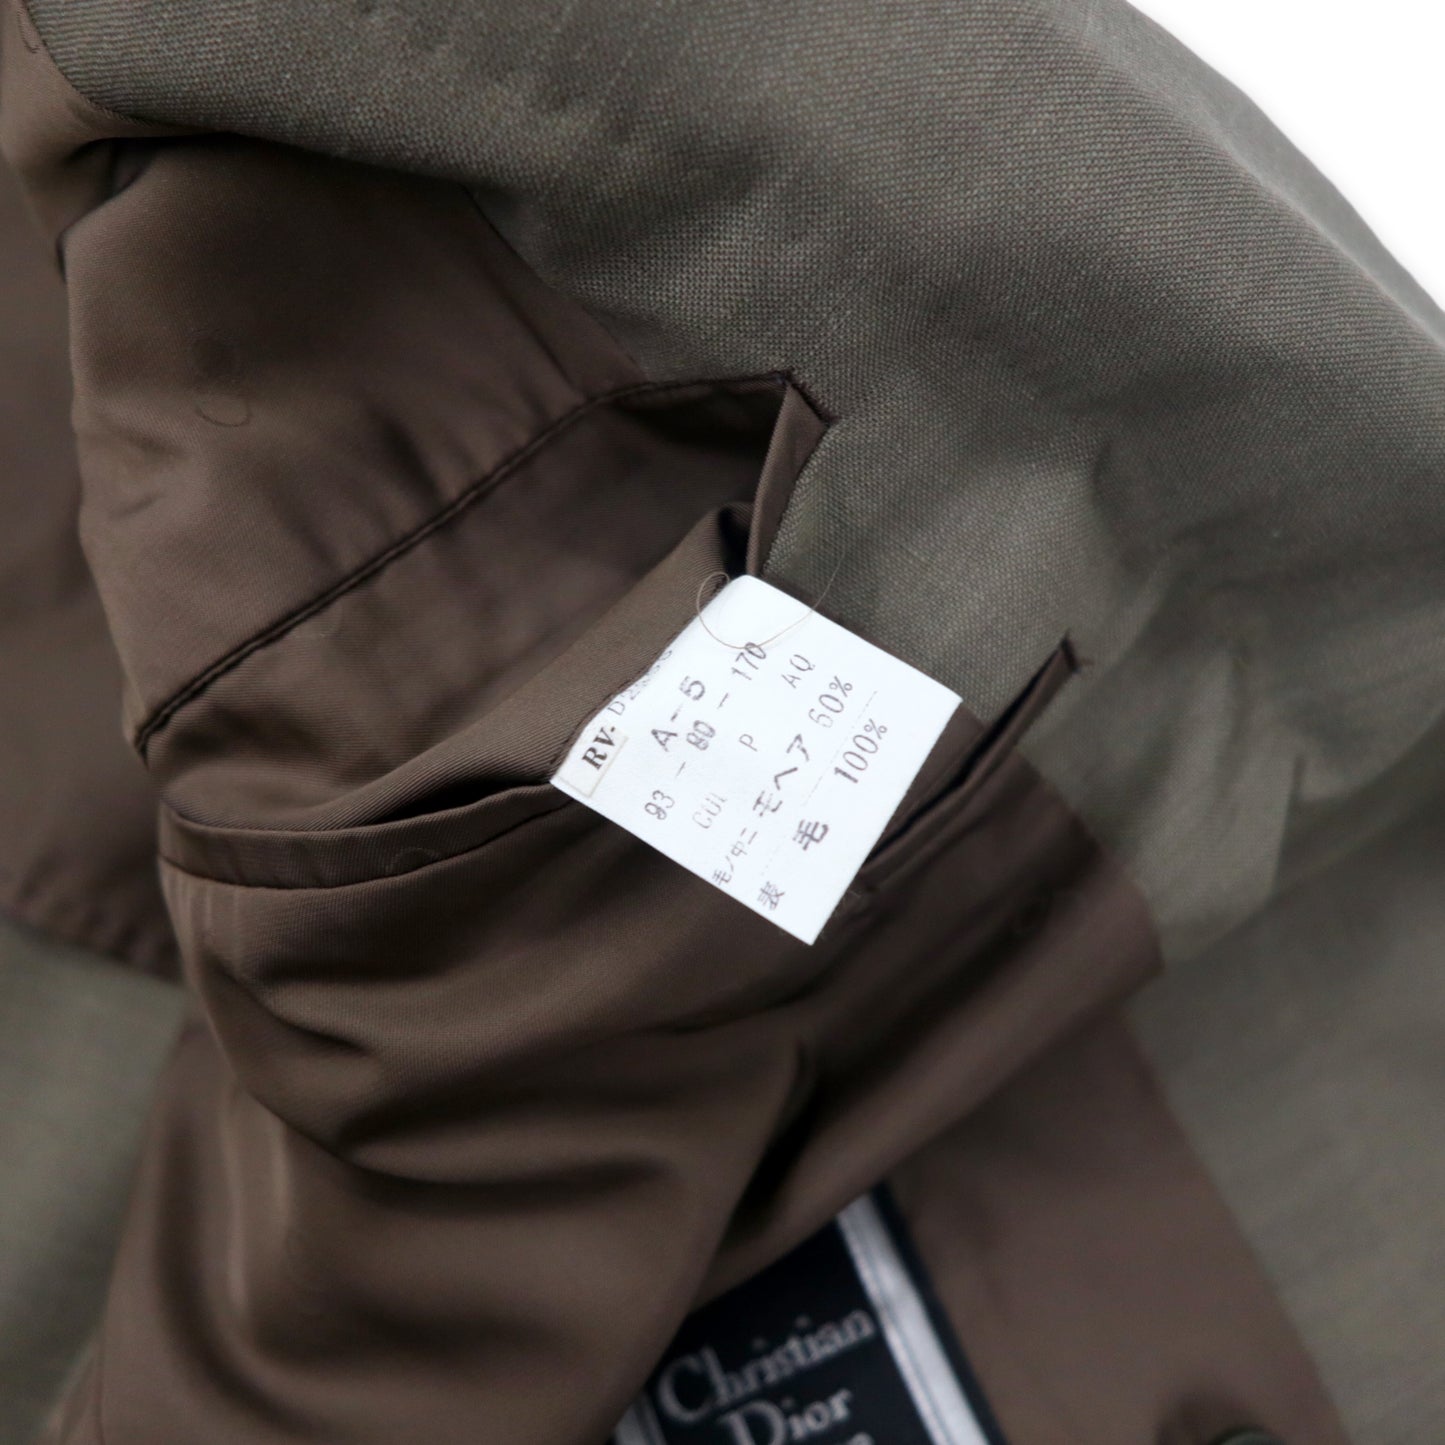 Christian Dior MONSIEUR ダブル スーツ セットアップ A-5 170 カーキ 玉虫色 ウール モヘア混 オールド 日本製